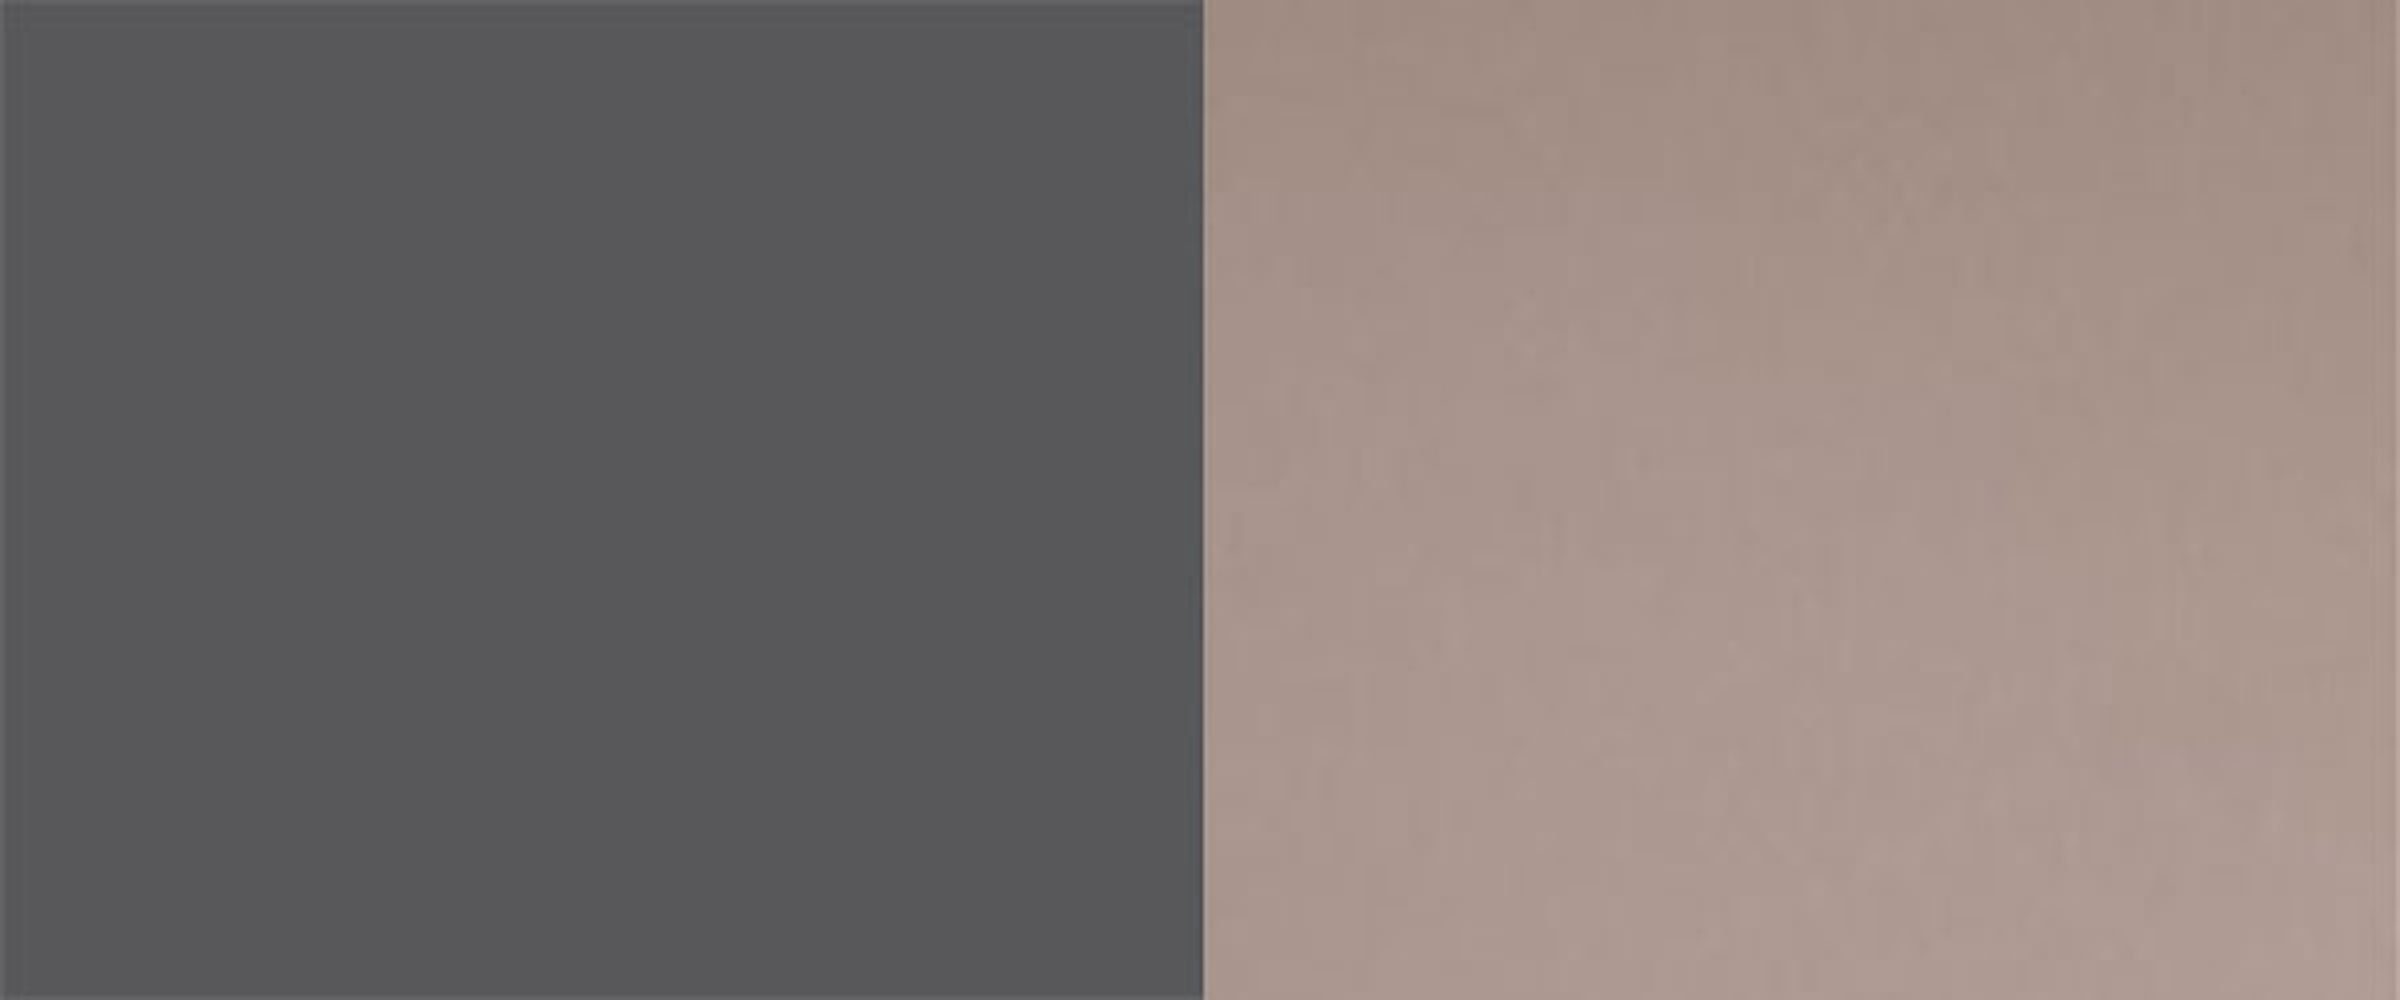 Küchenhängeschrank) Feldmann-Wohnen und 90cm Faltlifthängeschrank rosé (Bonn, Front- mit kupfer Korpusfarbe Bonn wählbar Hochfaltklappe matt